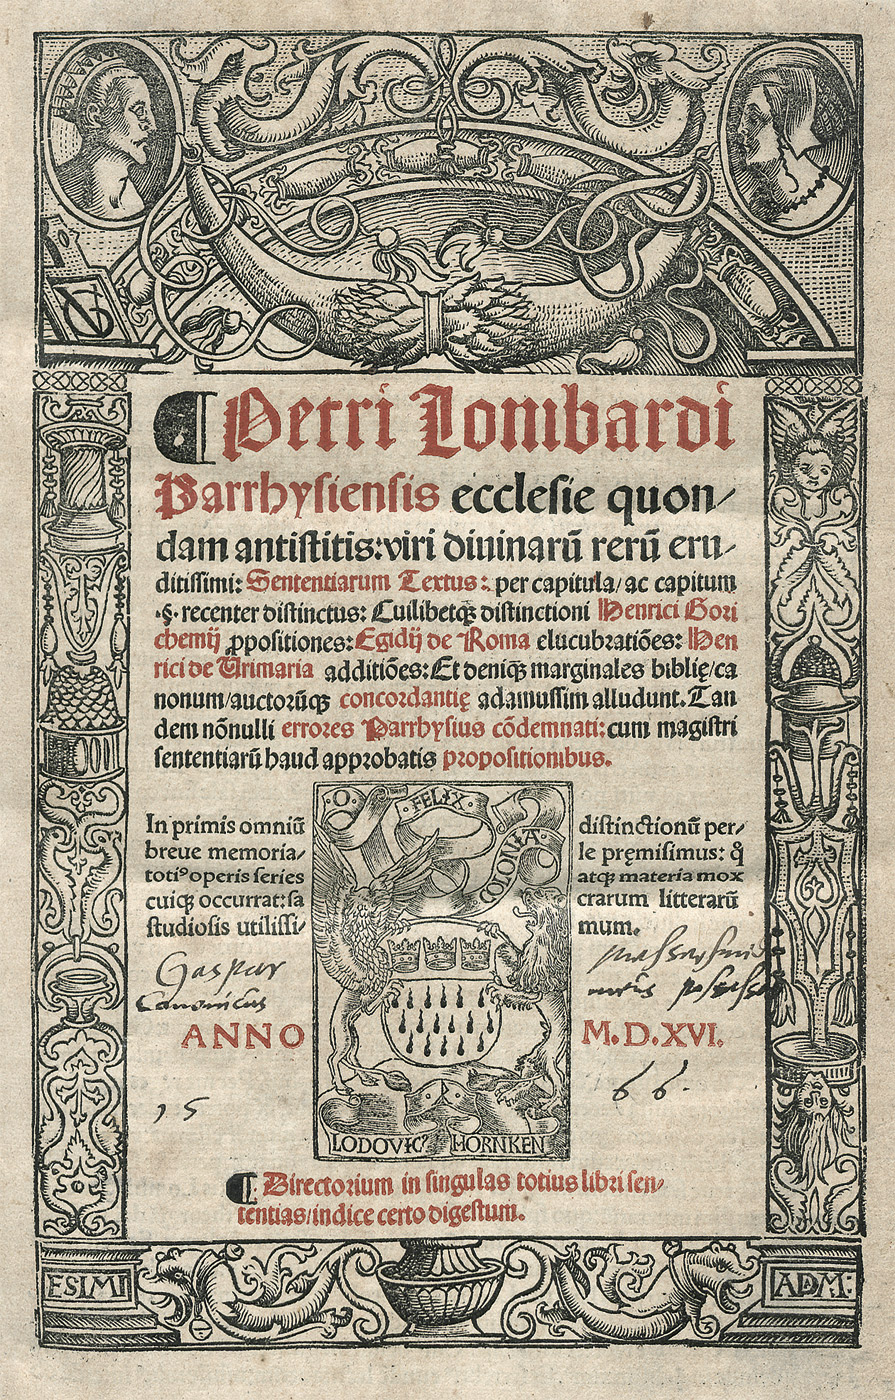 Lot 1167, Auction  115, Petrus Lombardus, Sententiarum Textus per capitula 